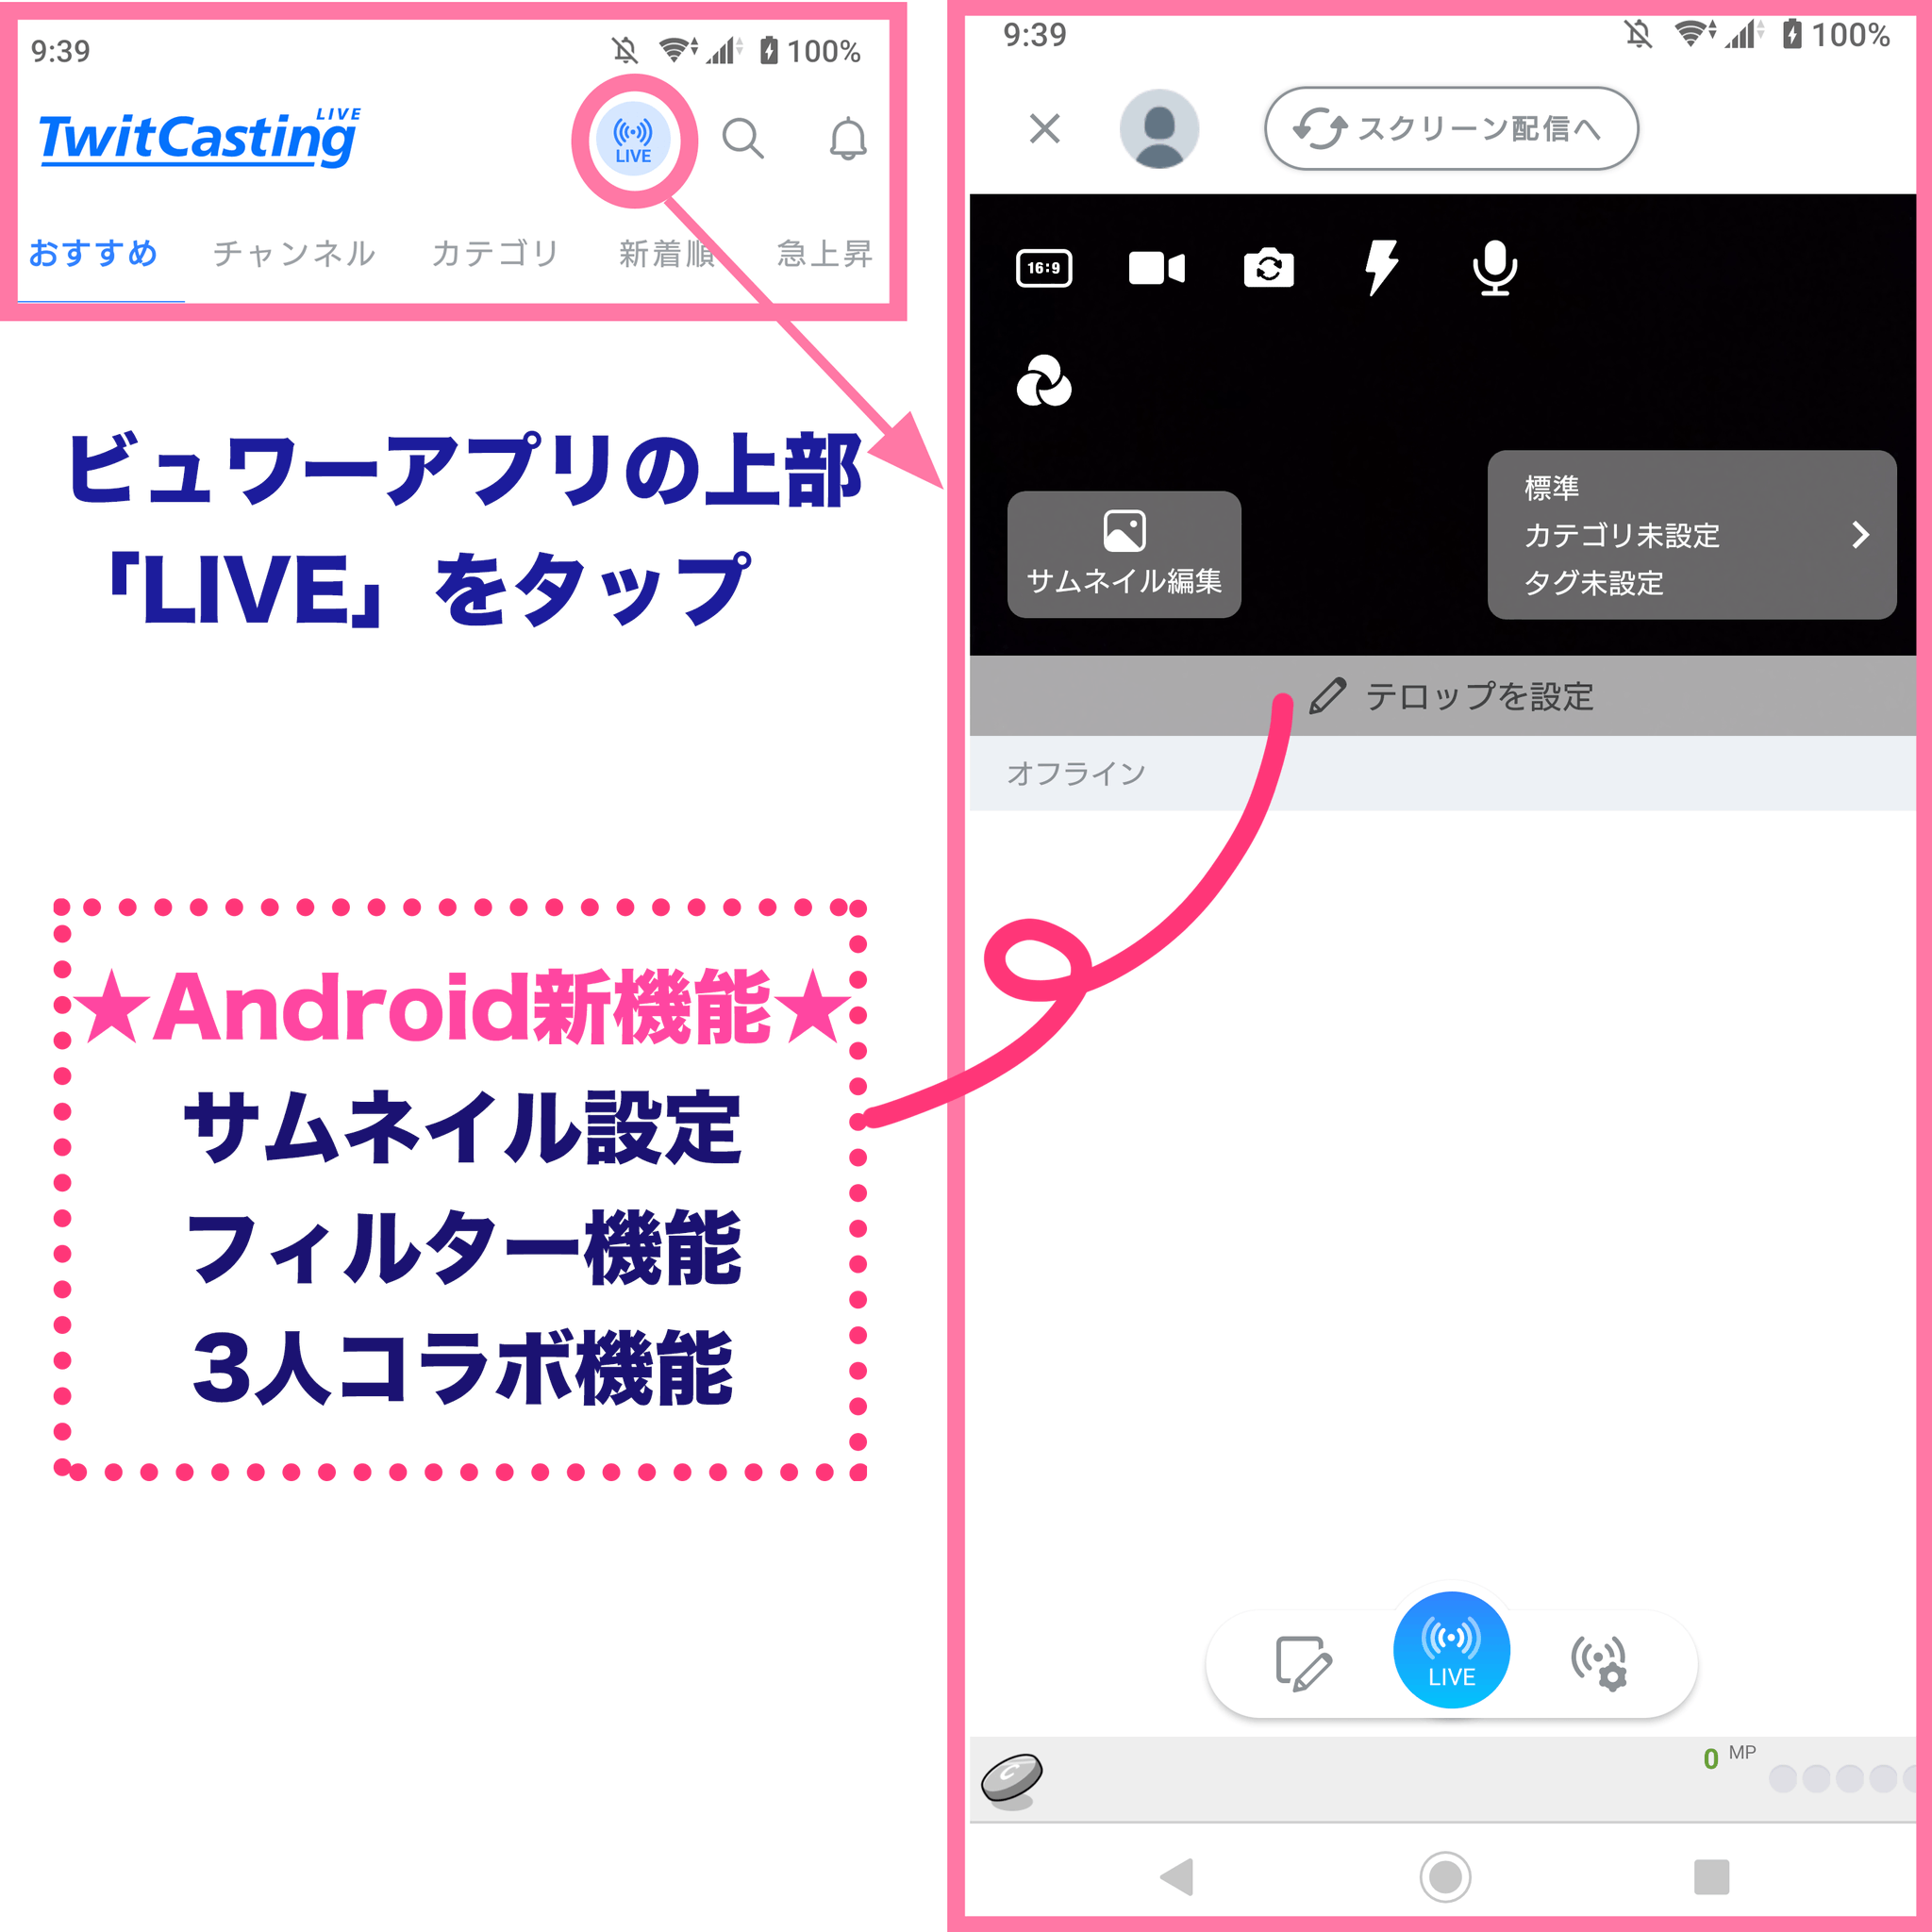 ツイキャス公式 Android アップデート ビュワーv5 031をリリースしました ついに ビュワーアプリからもライブ配信可能に 更に Androidでもフィルター機能やサムネイル設定が可能に ビュワー上部の Live ボタンをタップすれば ライブアプリ